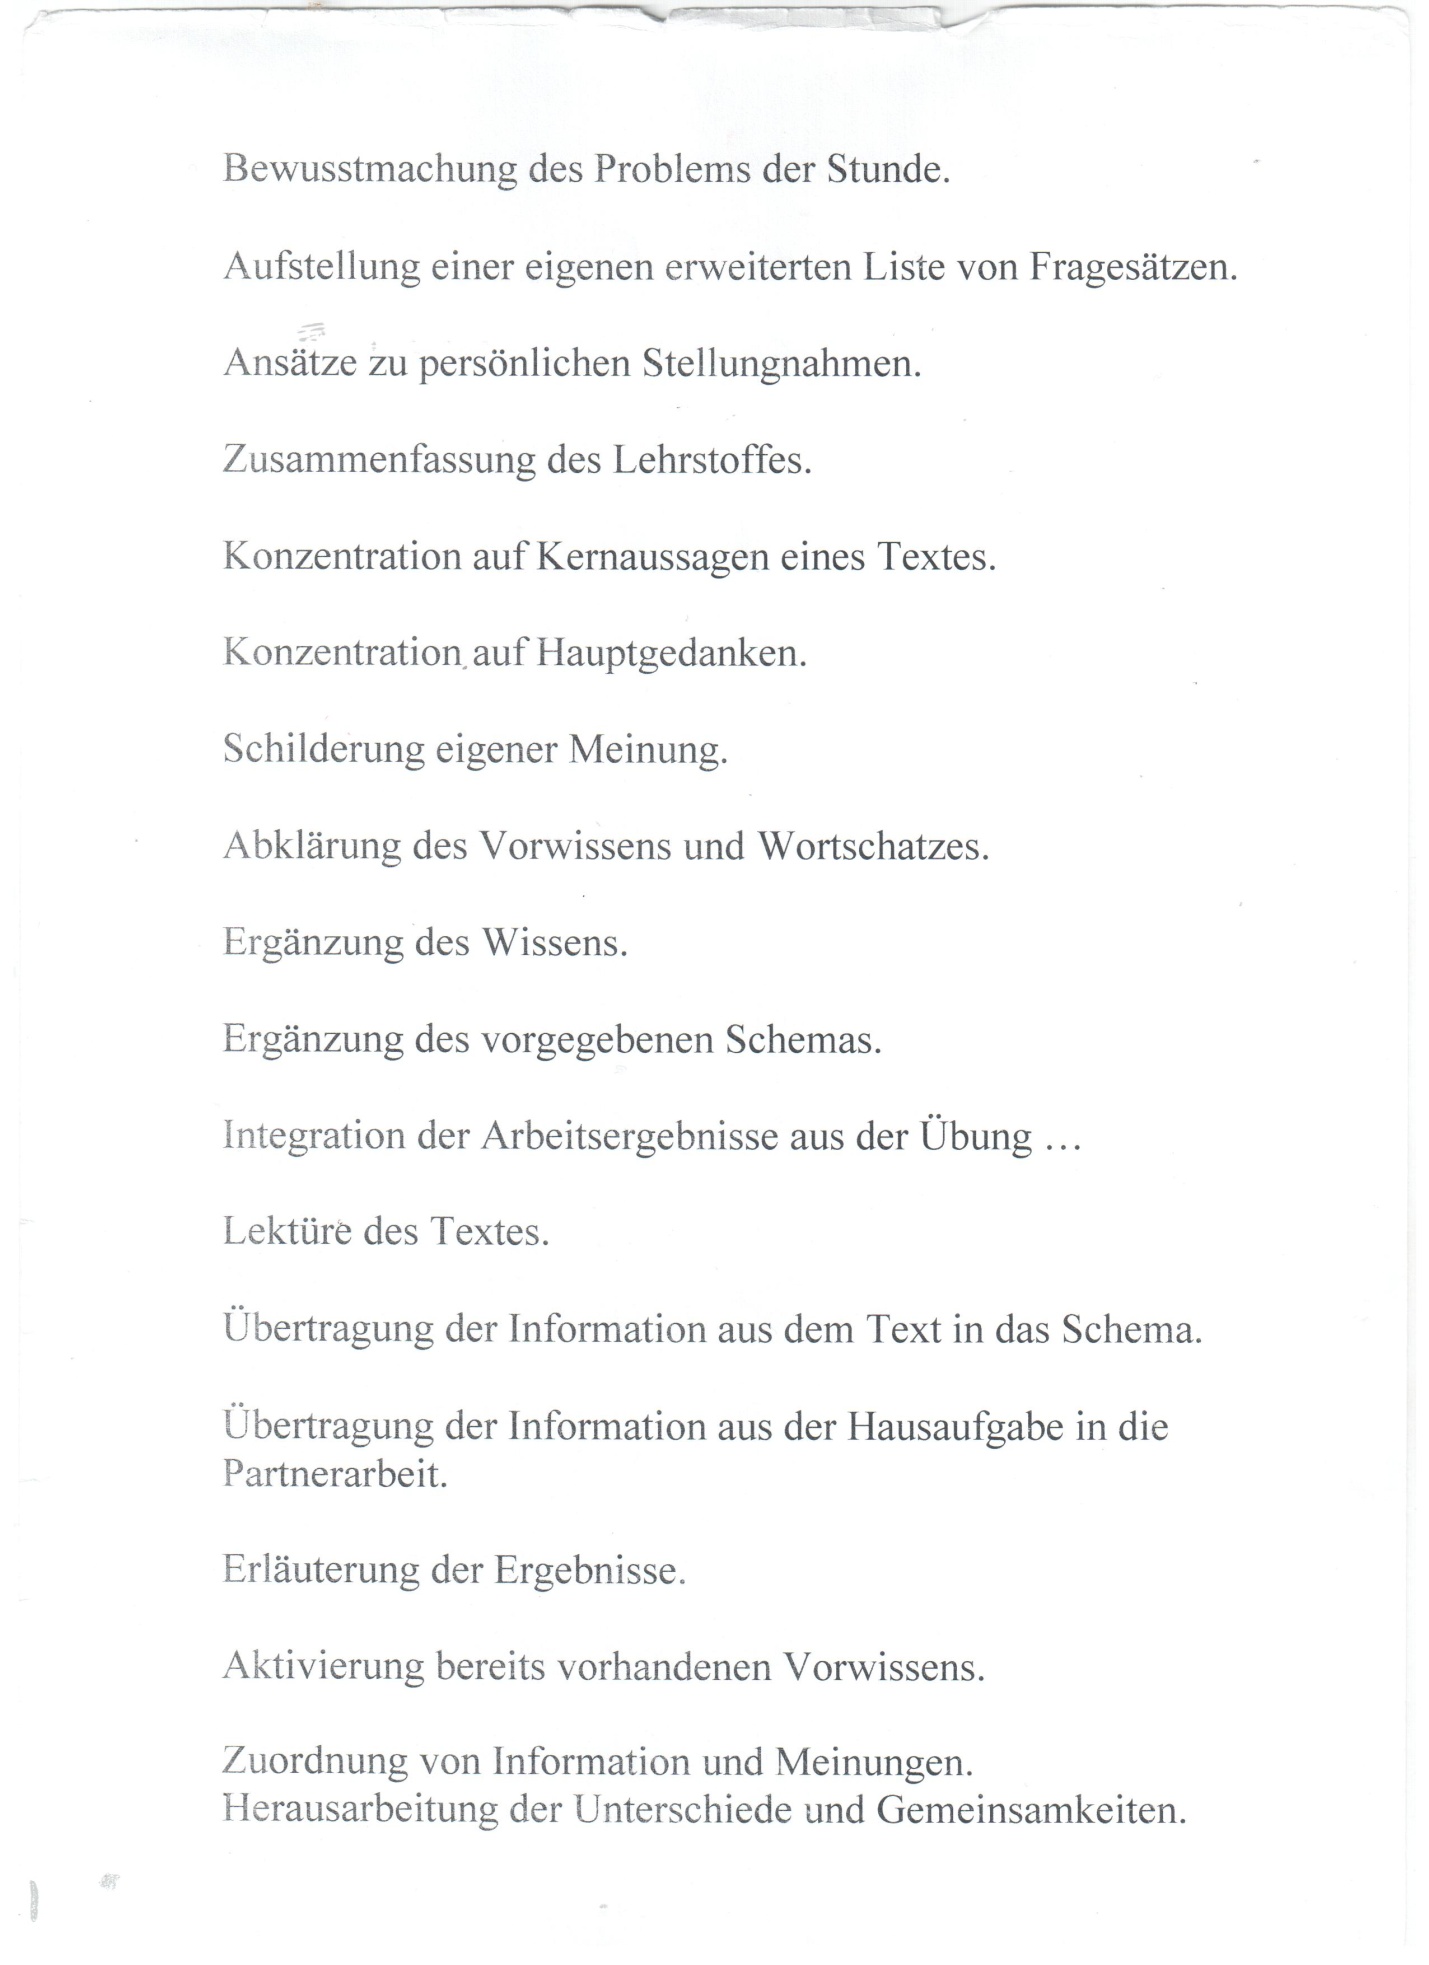 Методическая подборка Мини-каталог заданий на уроках немецкого языка.